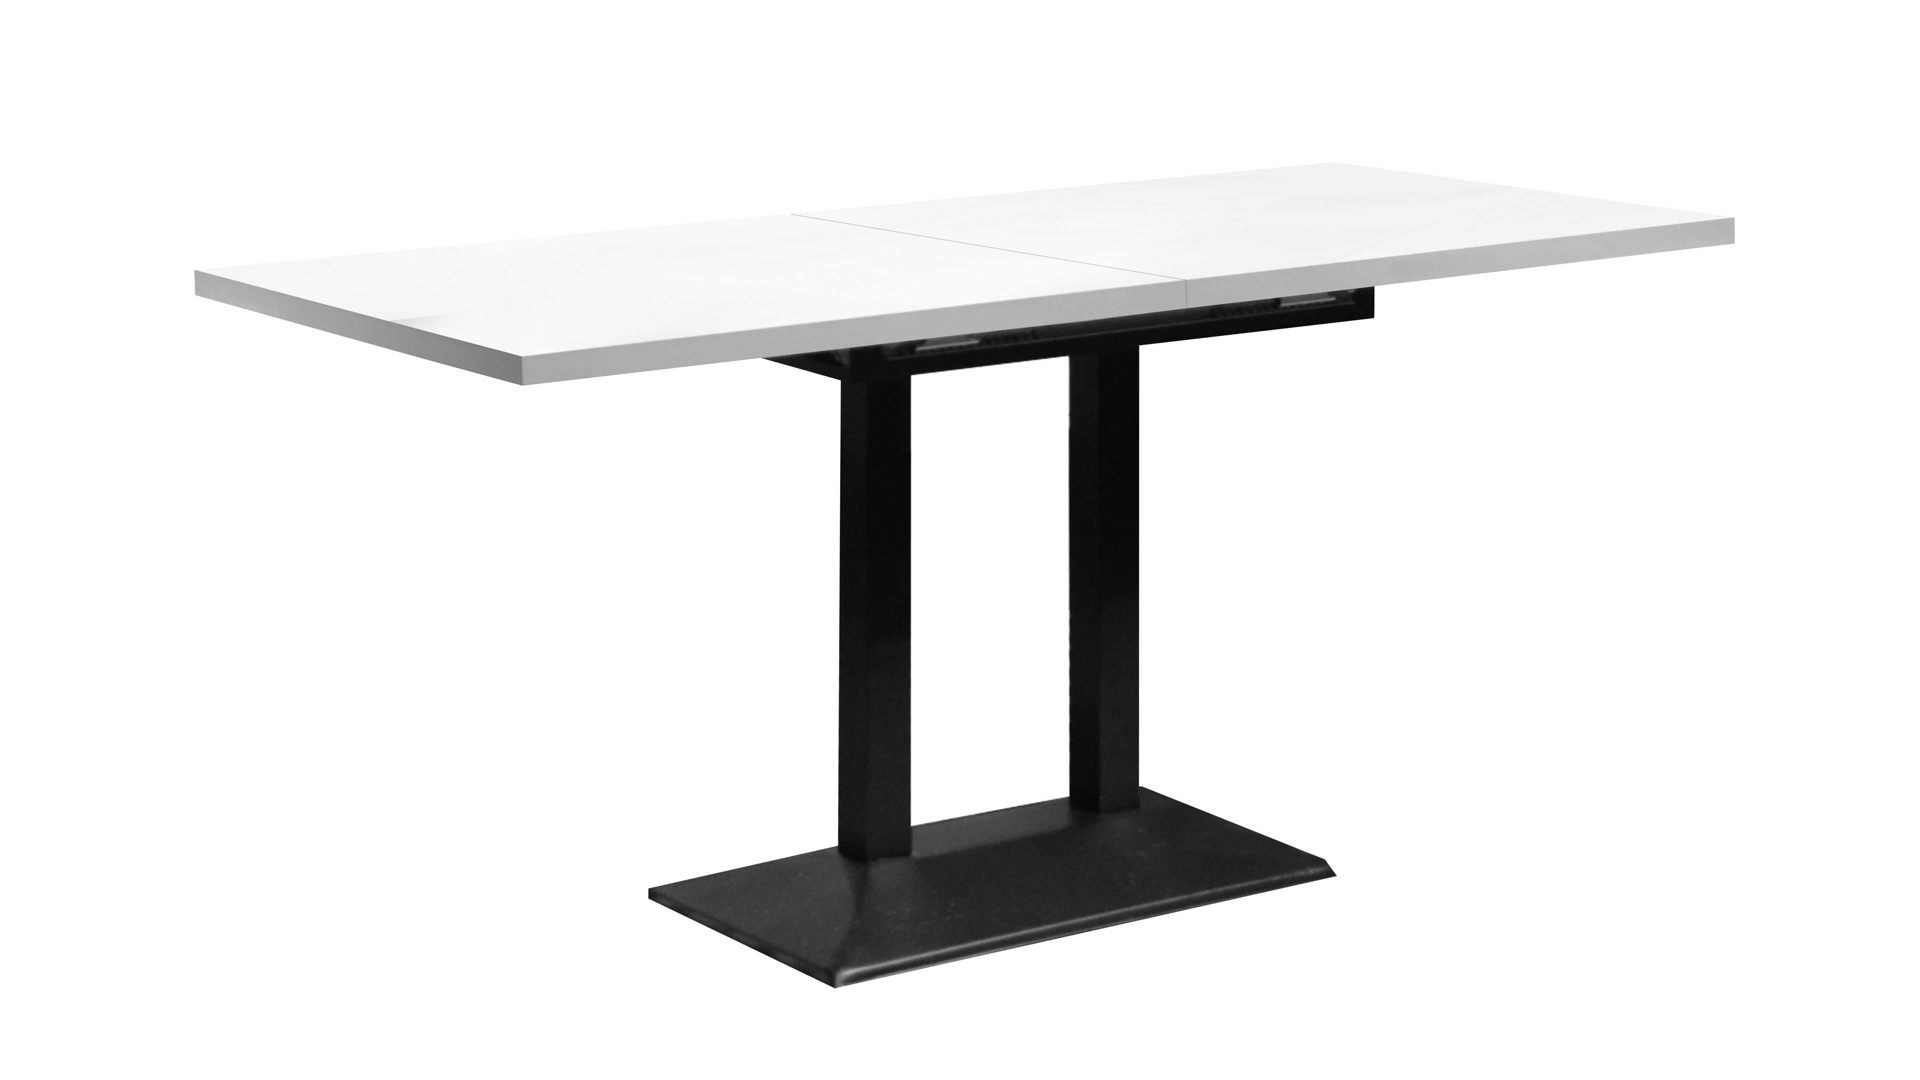 Tisch-Serie Big Bistro - Auszugtisch, Weiß & Schwarz - ca. 120-160 x 65 cm,  Lamstedt, Cuxhaven, Bremerhaven